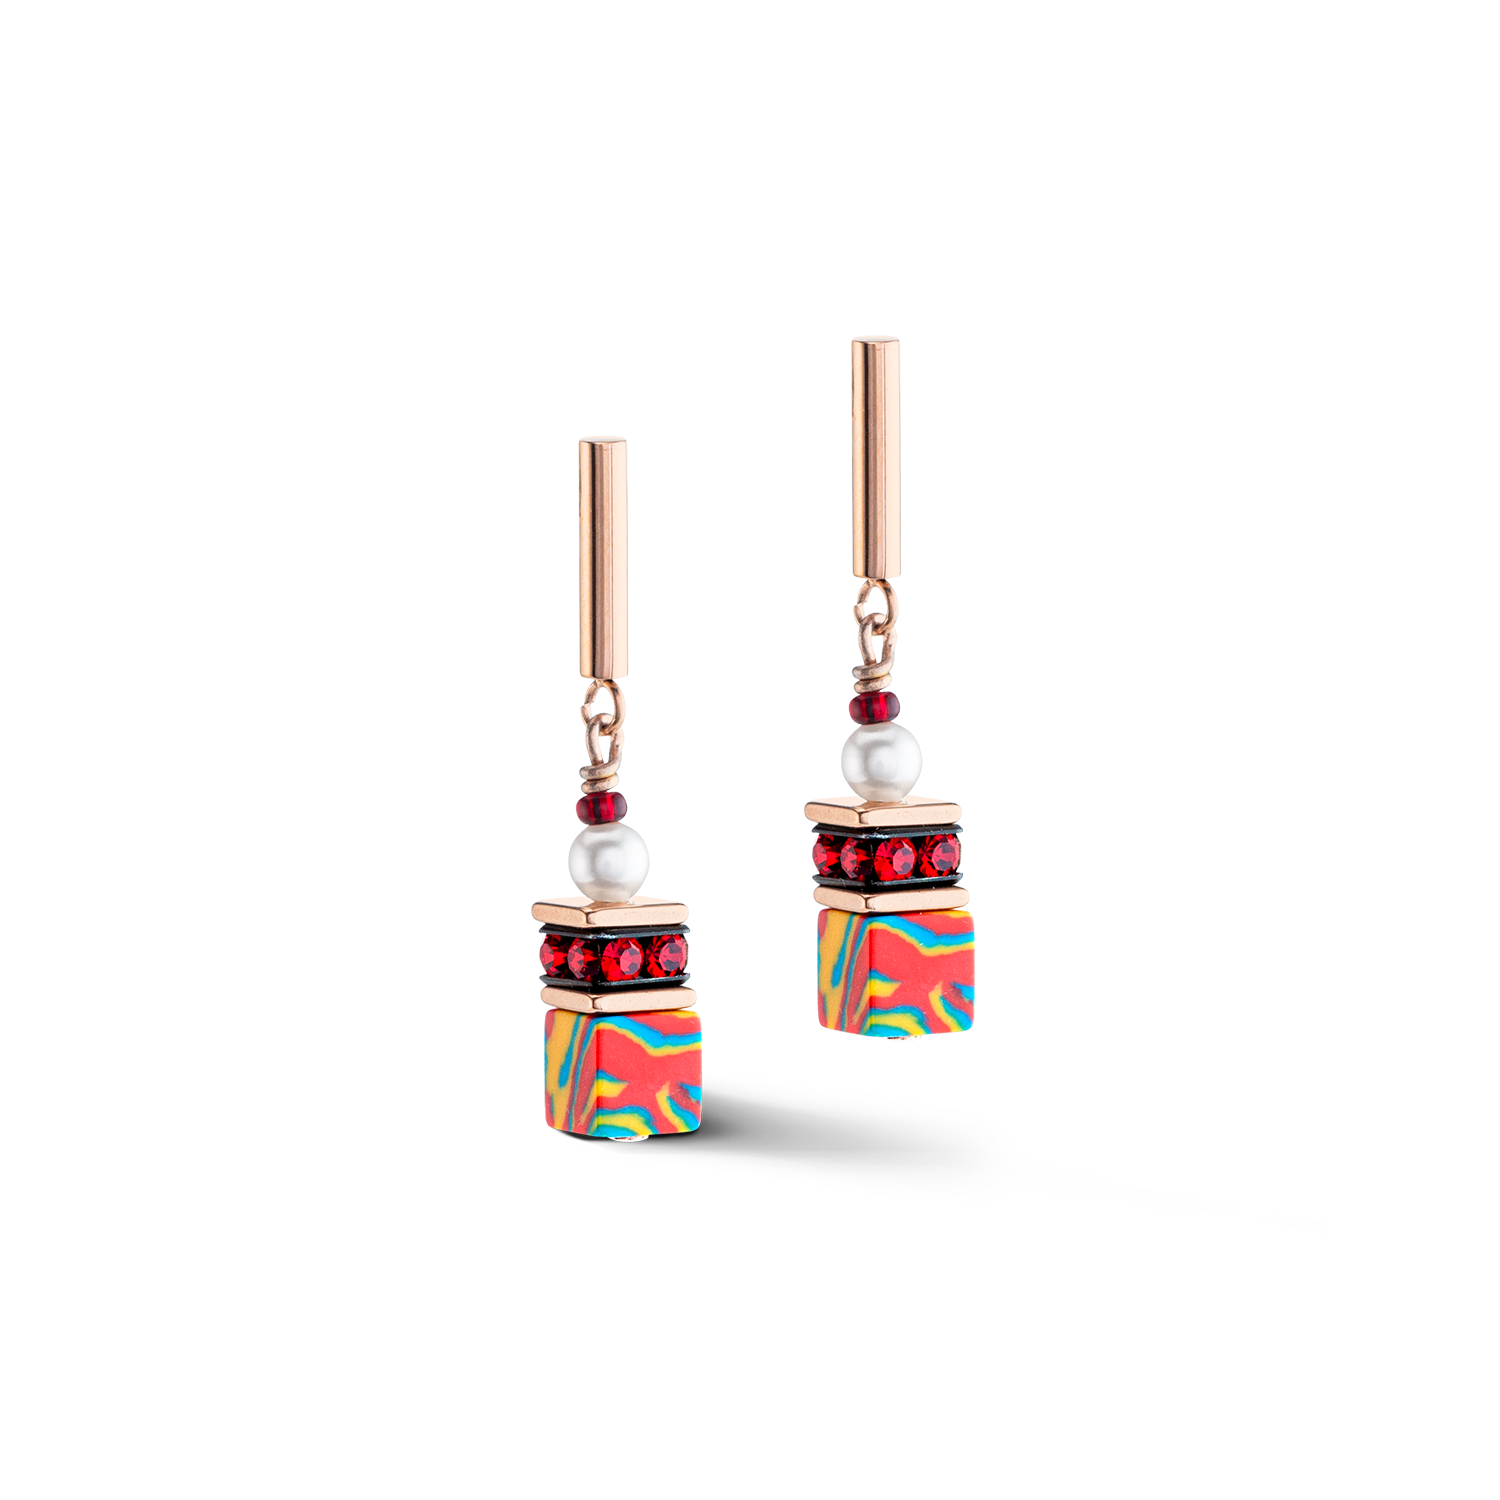 GeoCUBE® Fusion Festive earrings red